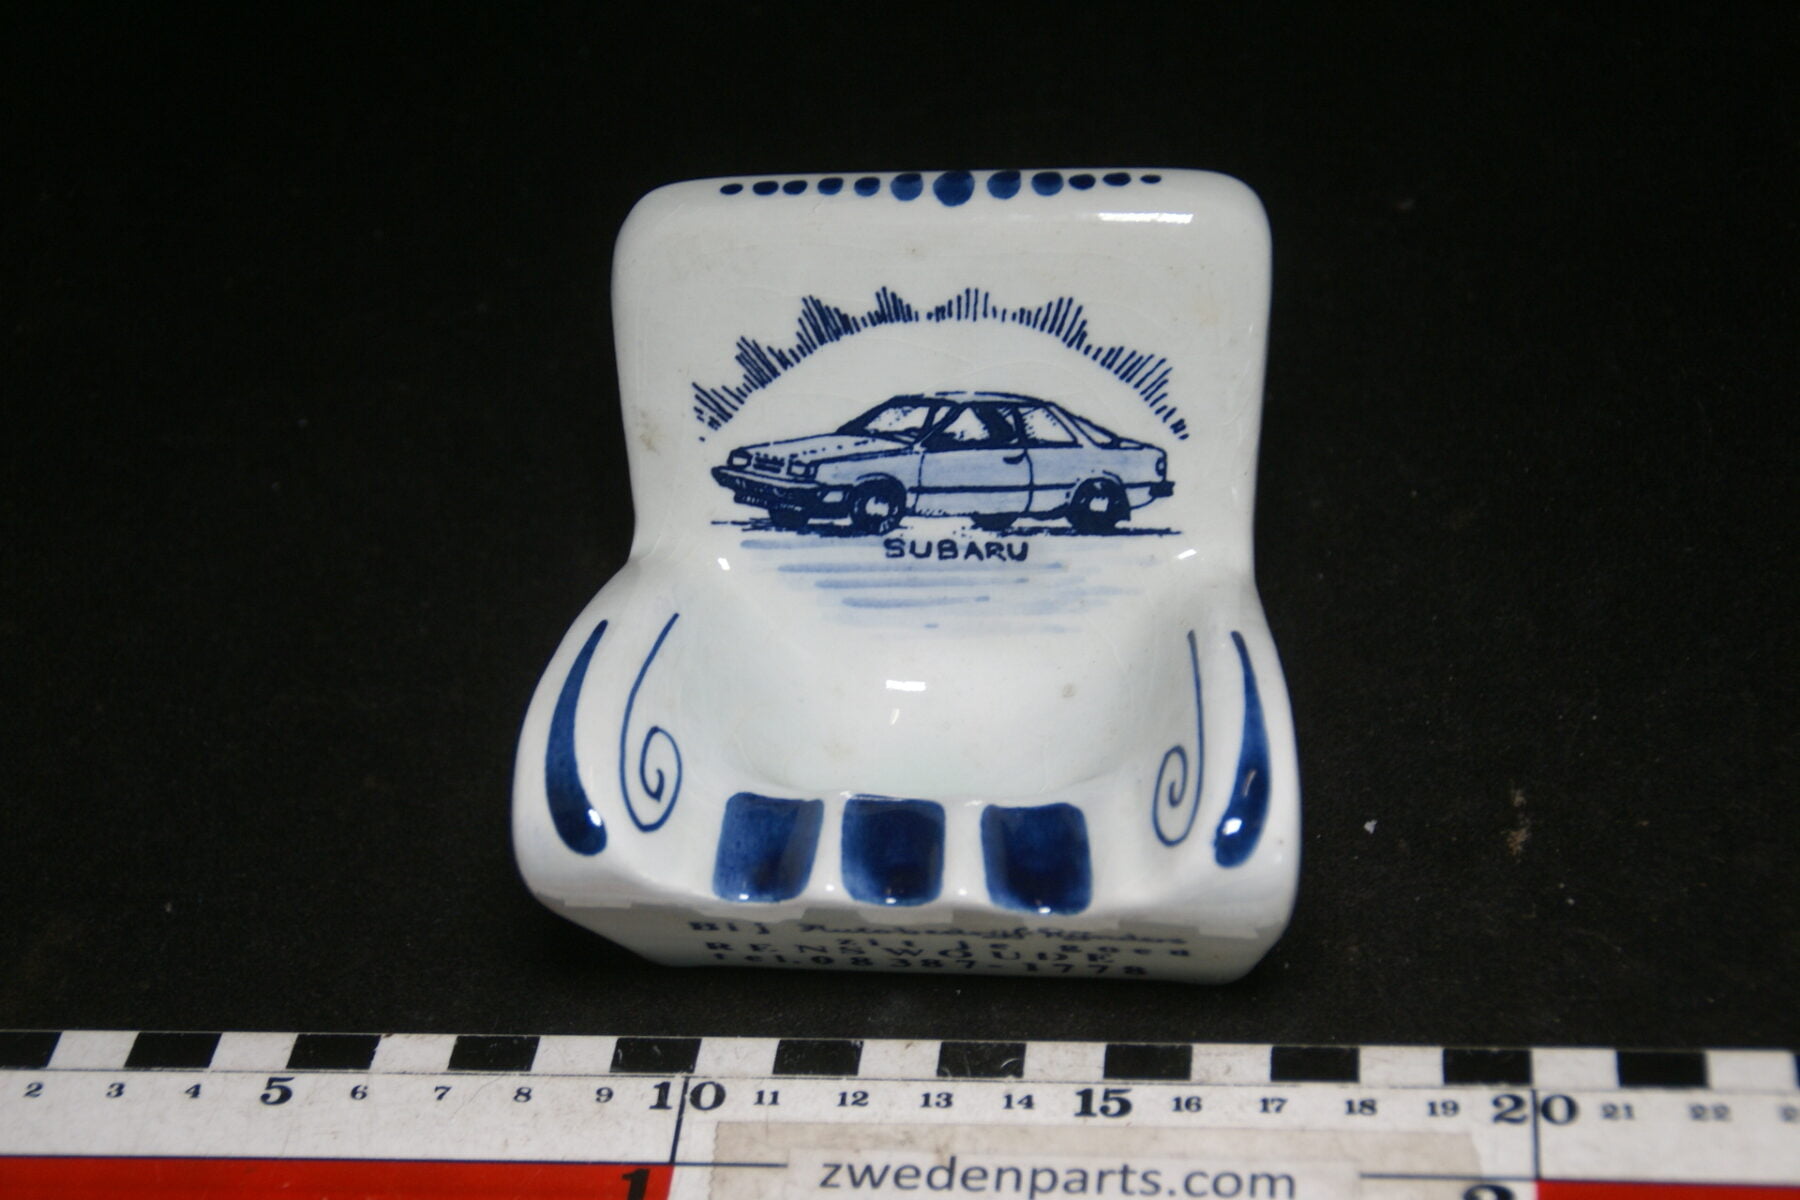 DSC06783 70 er jaren ceramische auto asbak Subaru Rijnders Renswoude-6963b31e